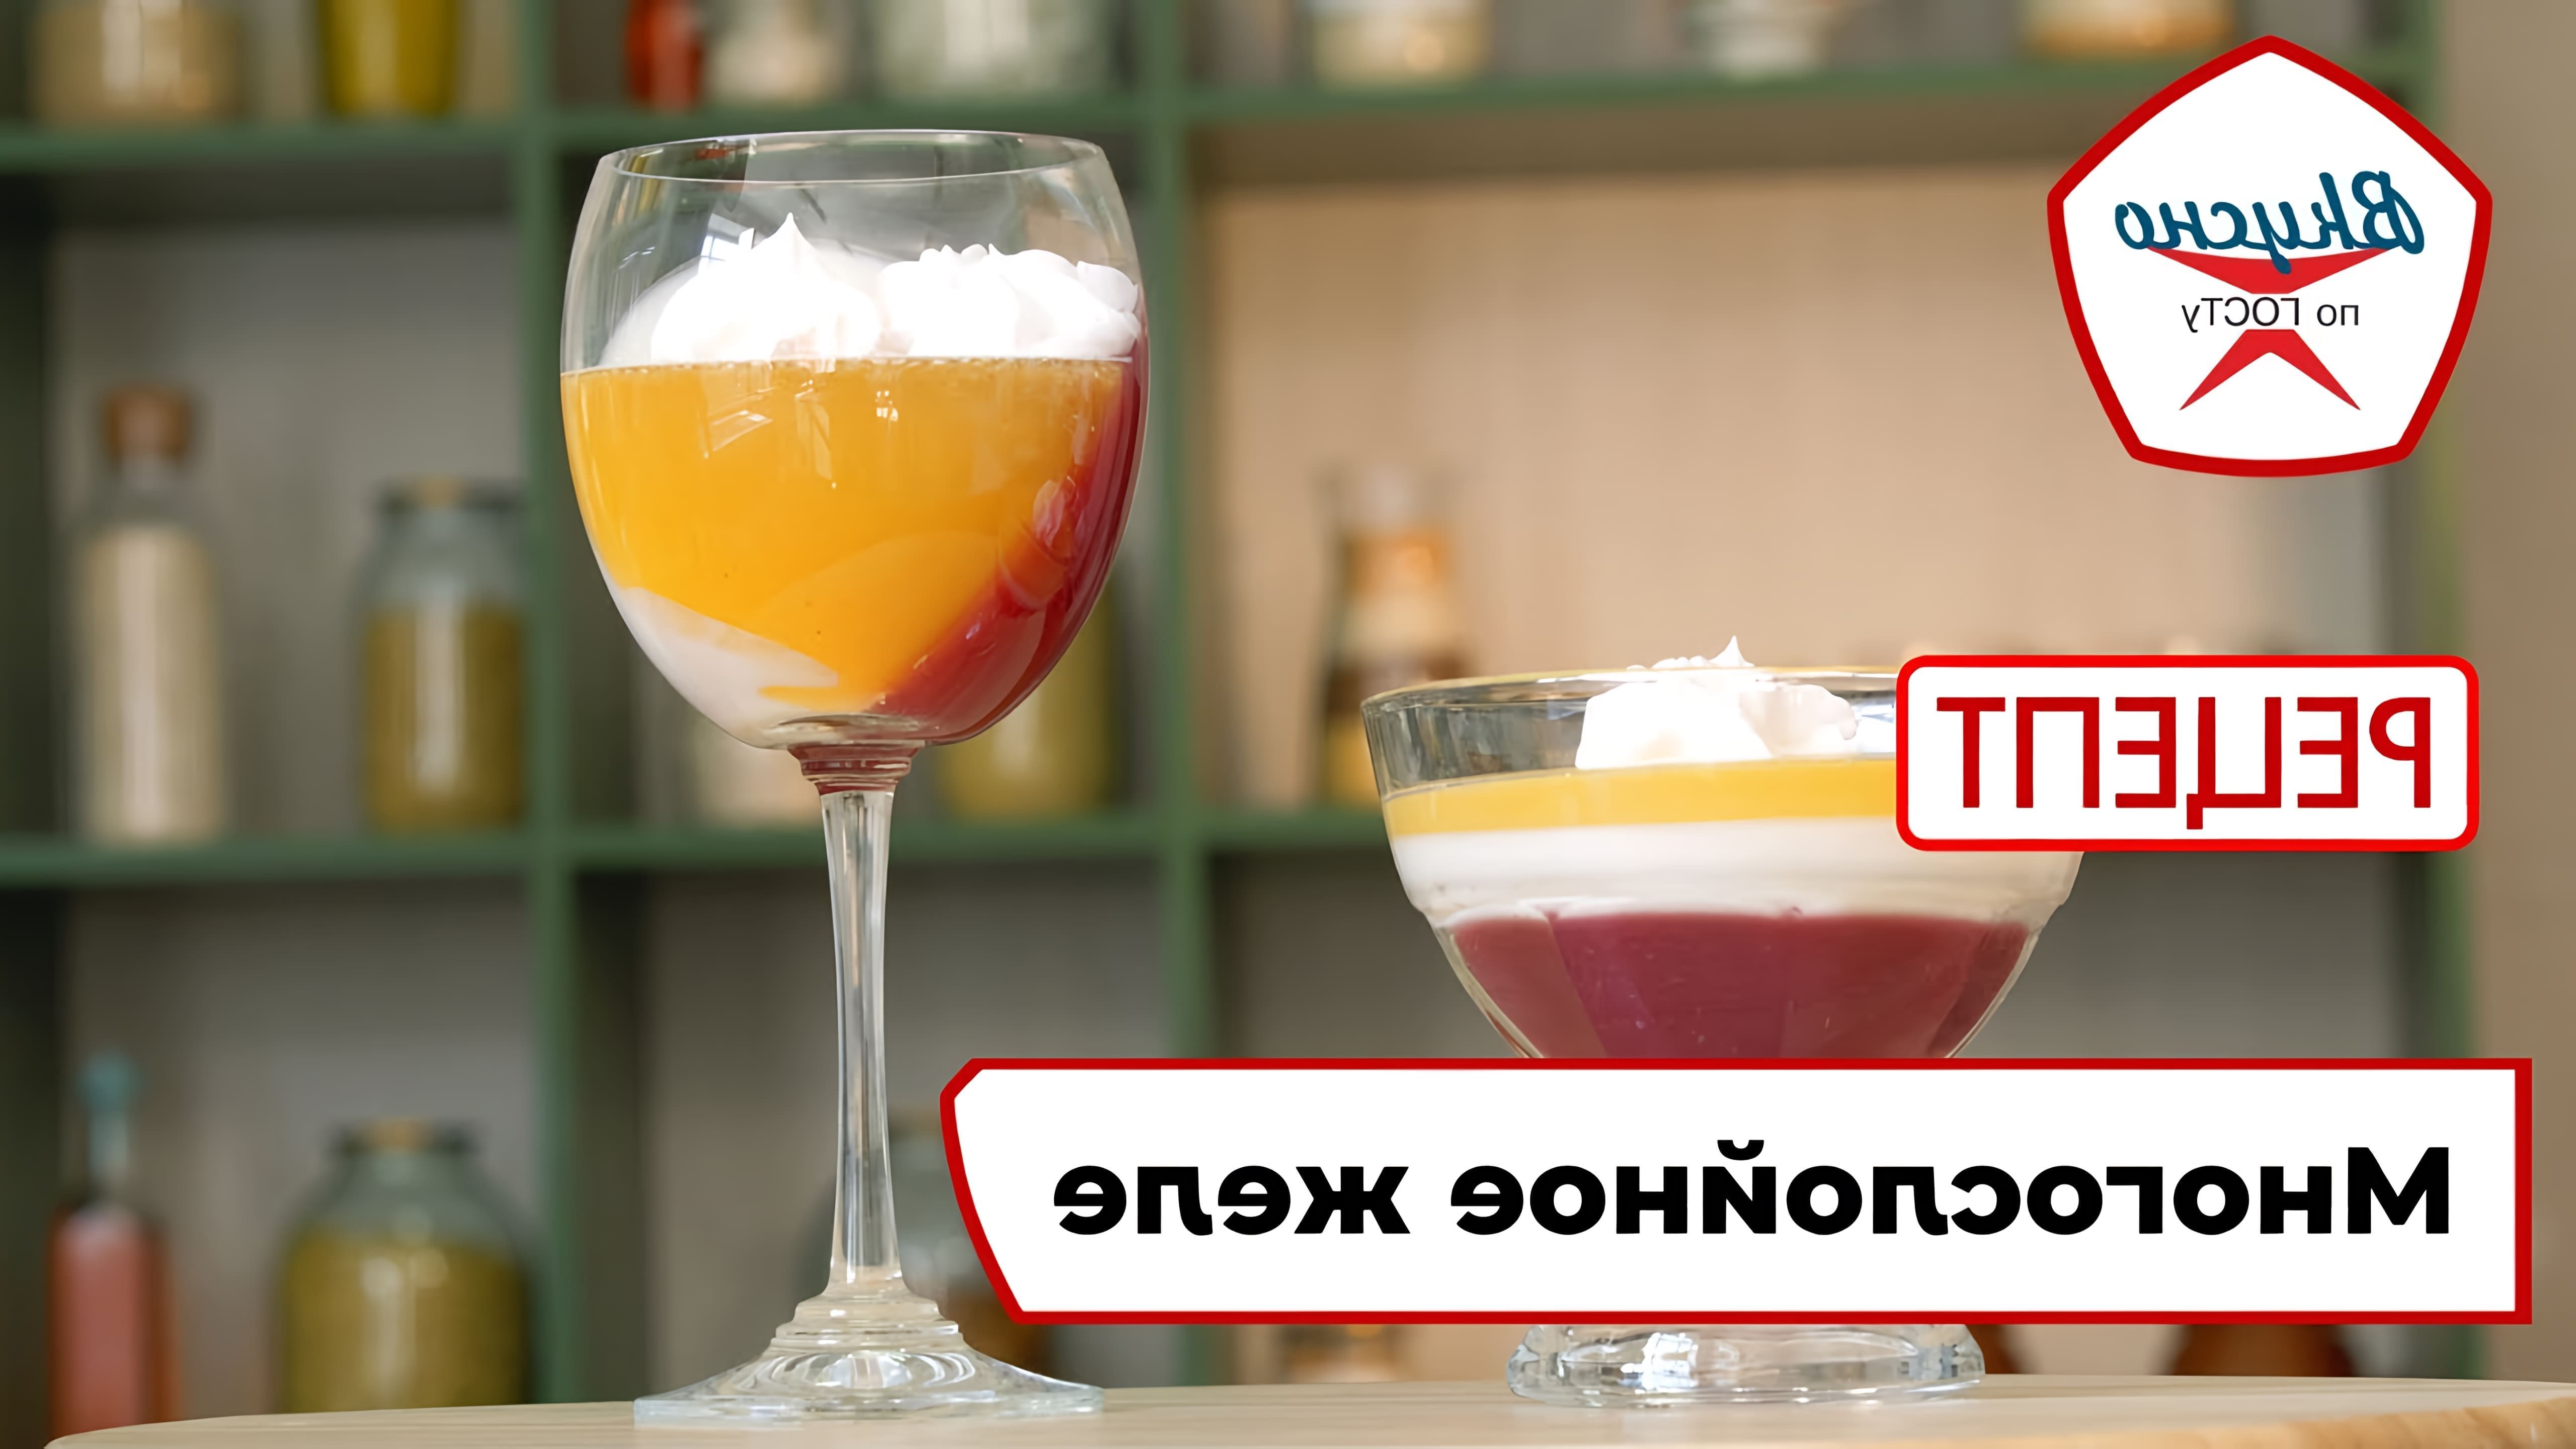 В этом видео демонстрируется рецепт многослойного желе, которое состоит из трех слоев: молочного, апельсинового и черносмородинового